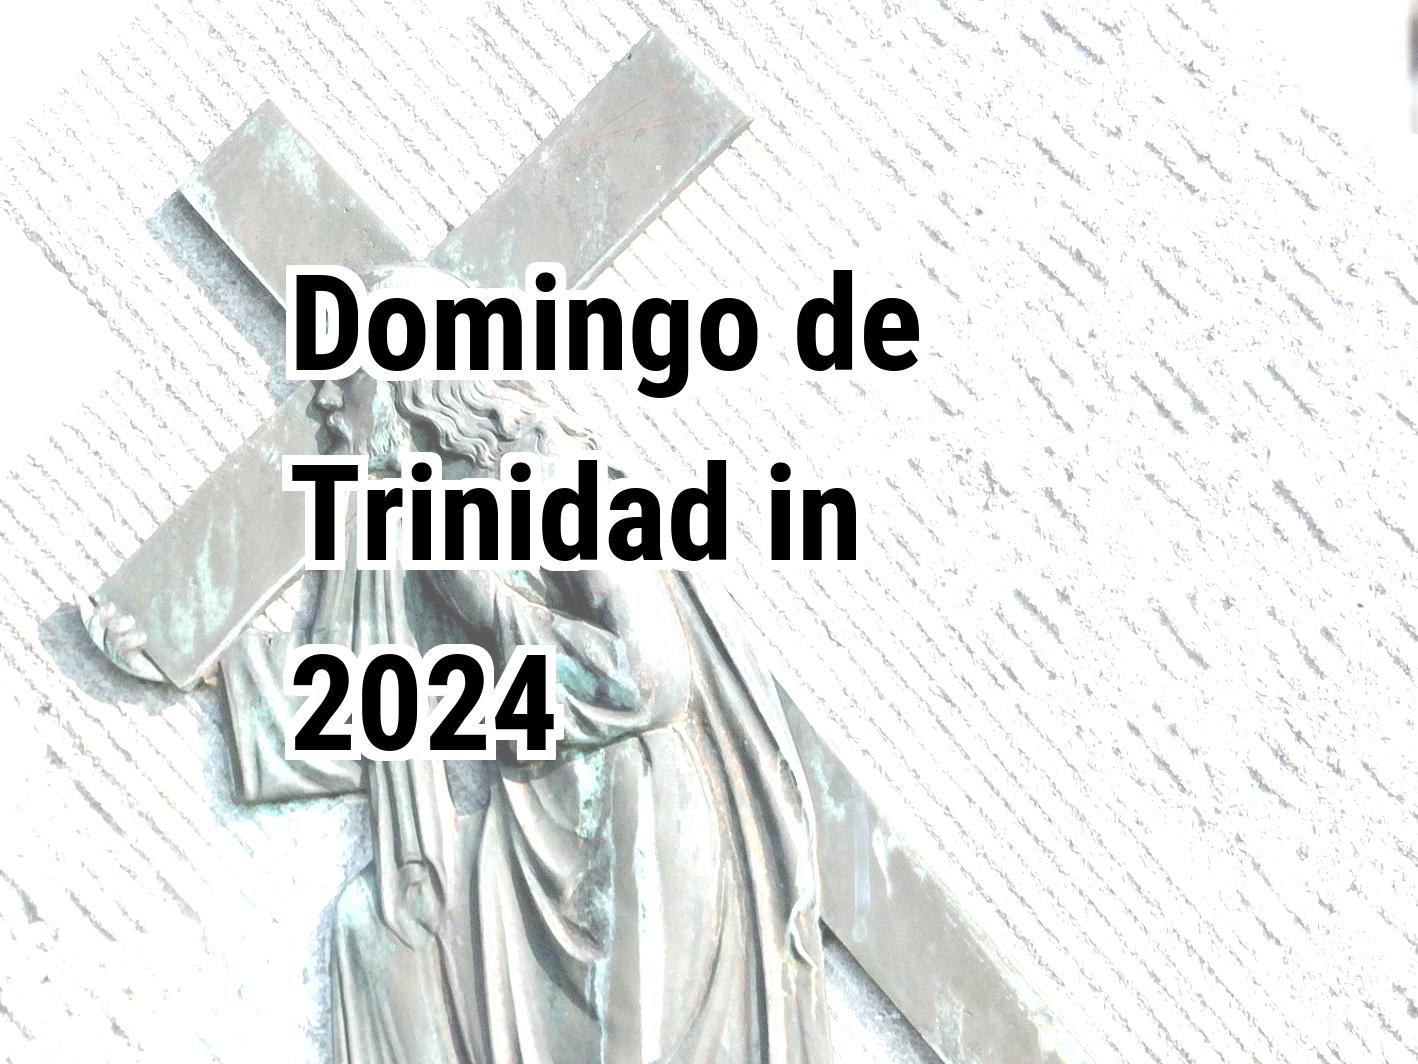 Domingo de Trinidad 2024 Calendar Center